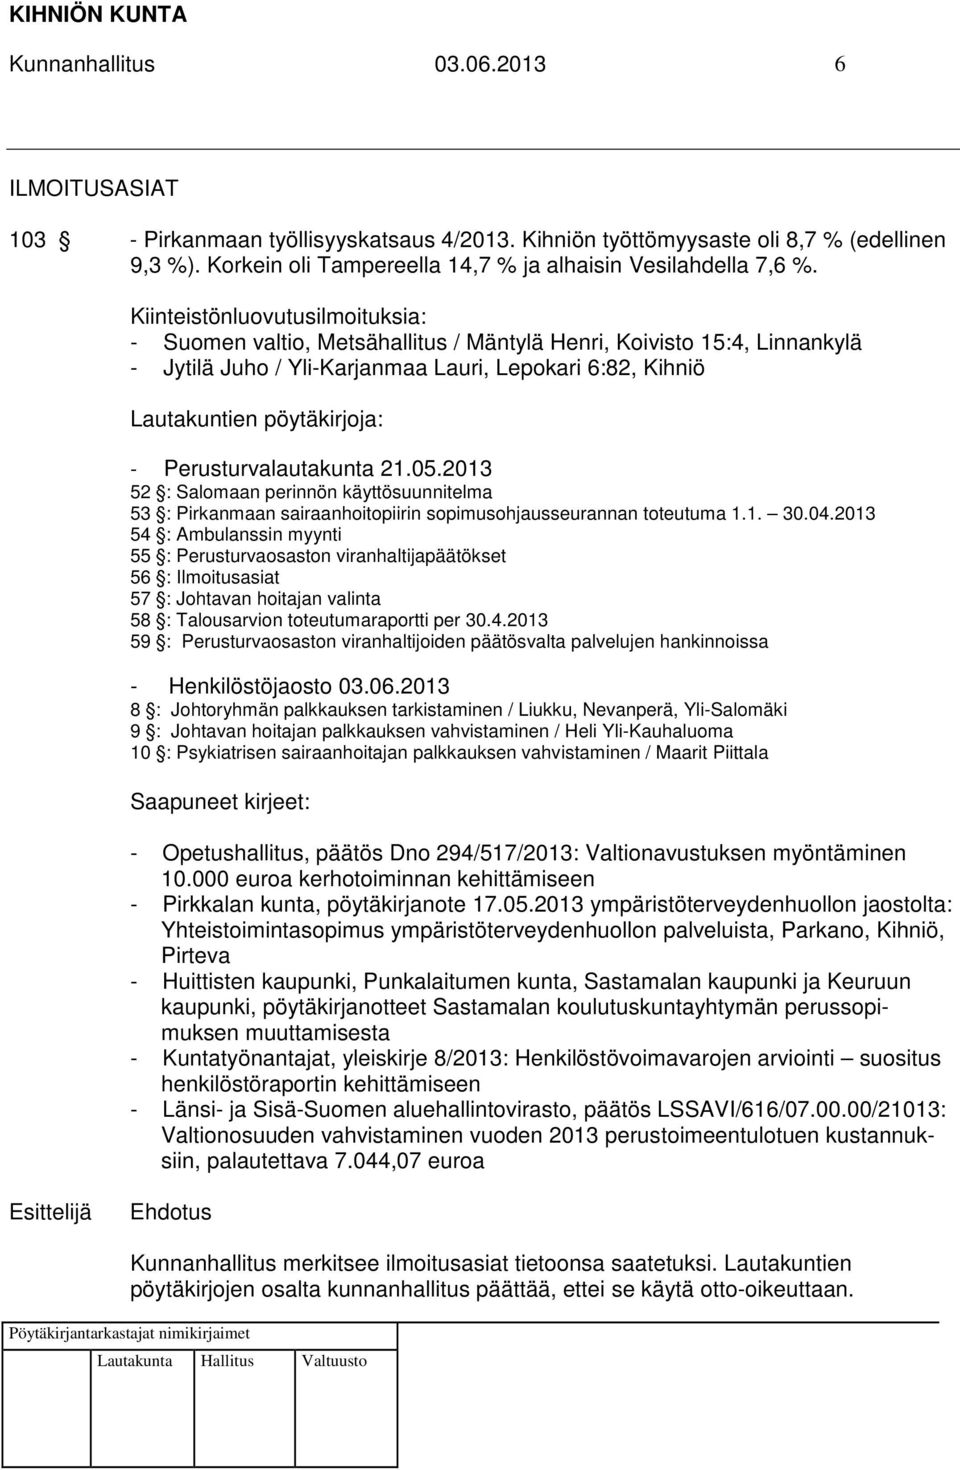 Perusturvalautakunta 21.05.2013 52 : Salomaan perinnön käyttösuunnitelma 53 : Pirkanmaan sairaanhoitopiirin sopimusohjausseurannan toteutuma 1.1. 30.04.